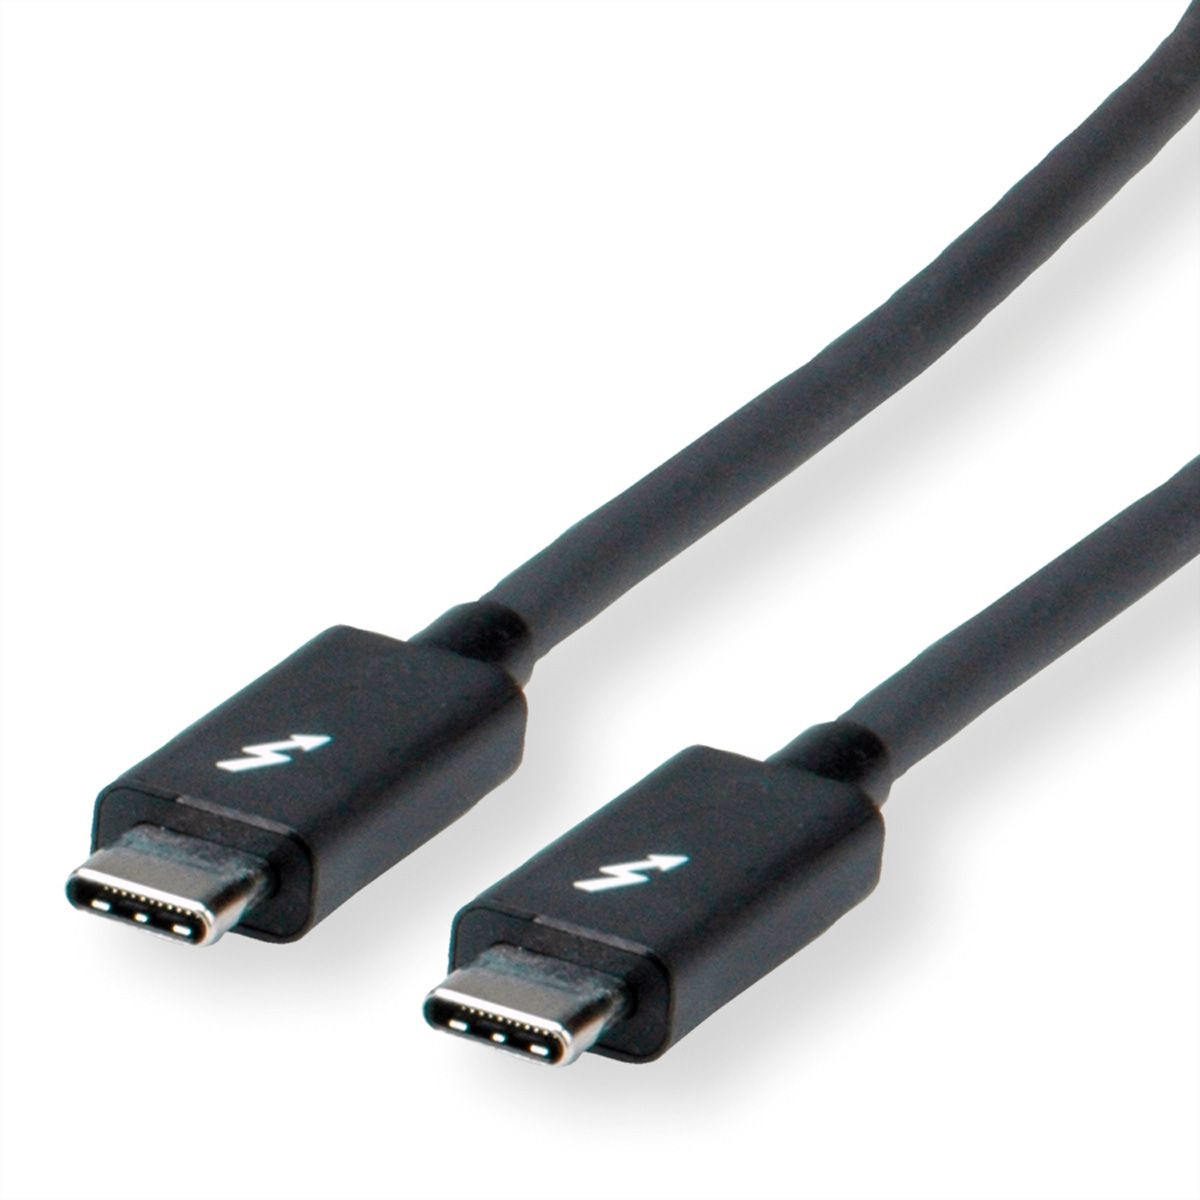 ROLINE Thunderbolt™ 3 Cable, 20GBit/s, 5A, M/M, black, 2 m - SECOMP